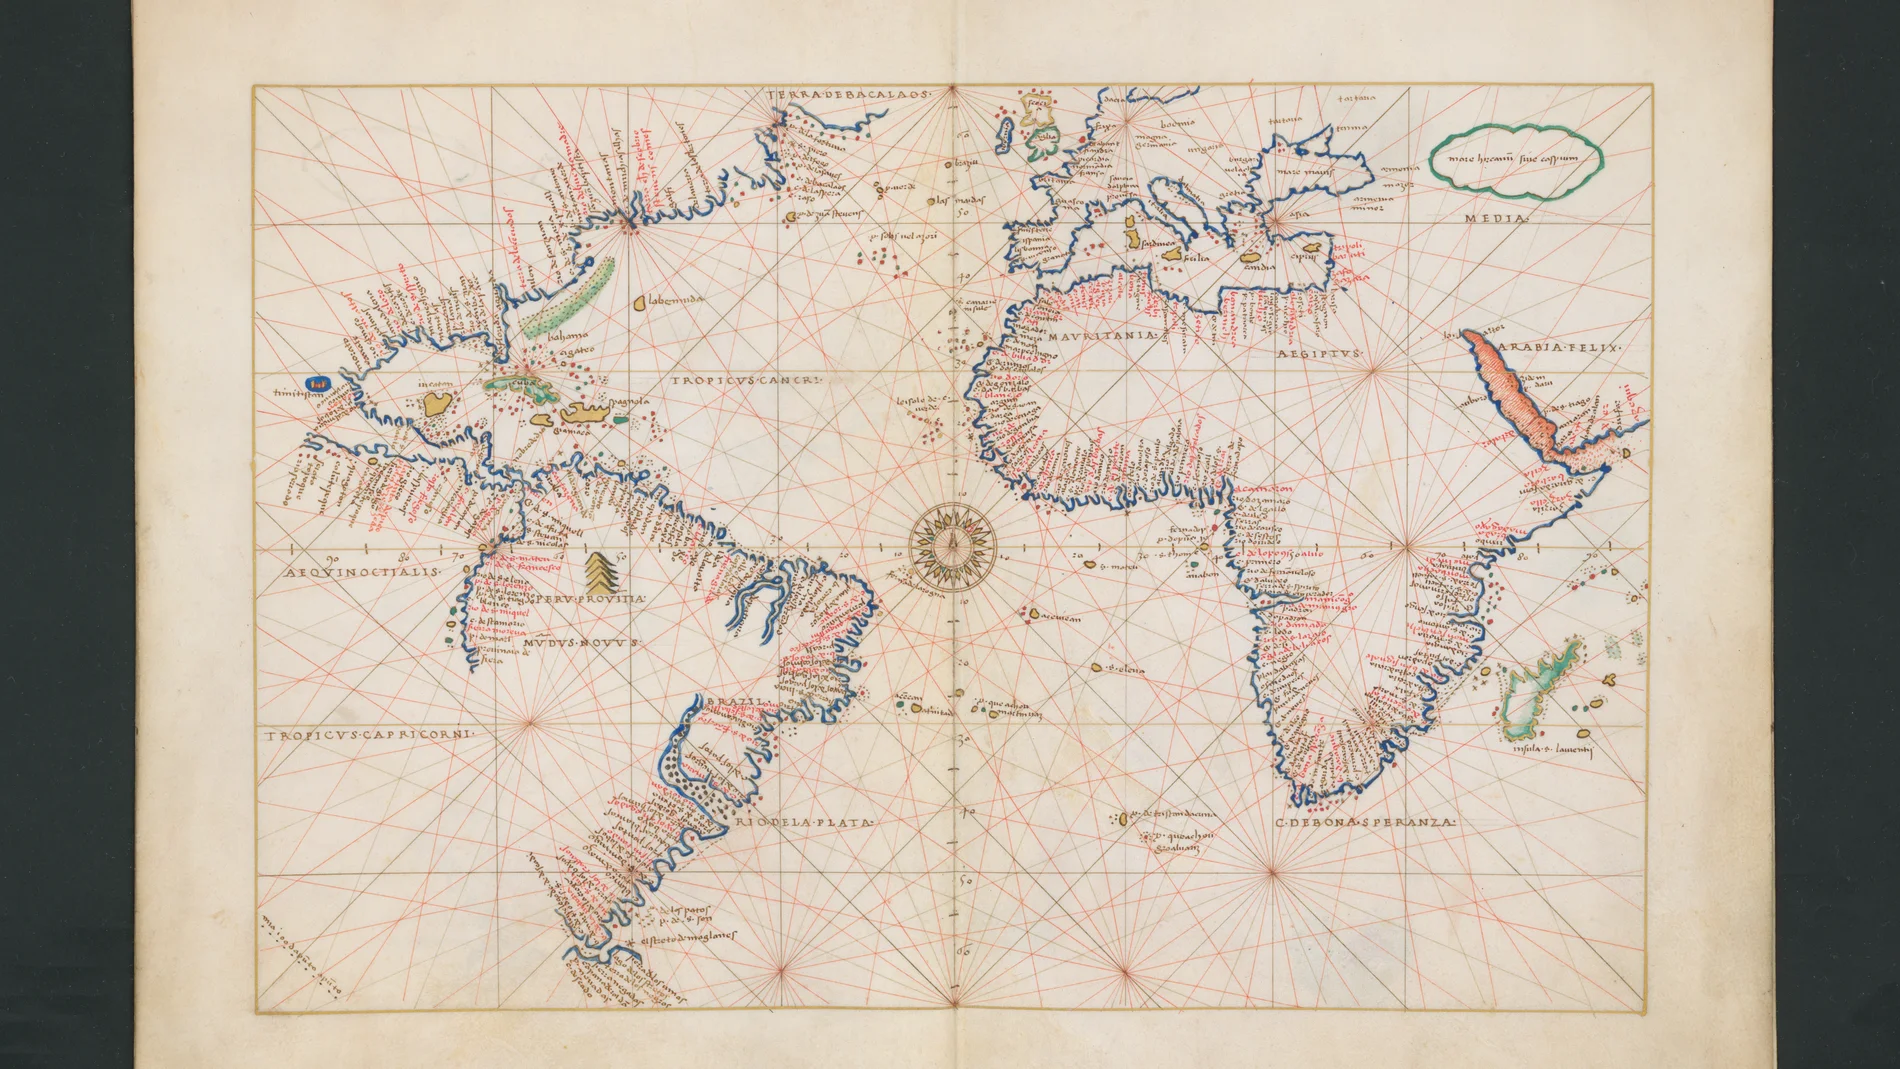 Detalle de uno de los mapas del interior del atlas portulano recuperado.